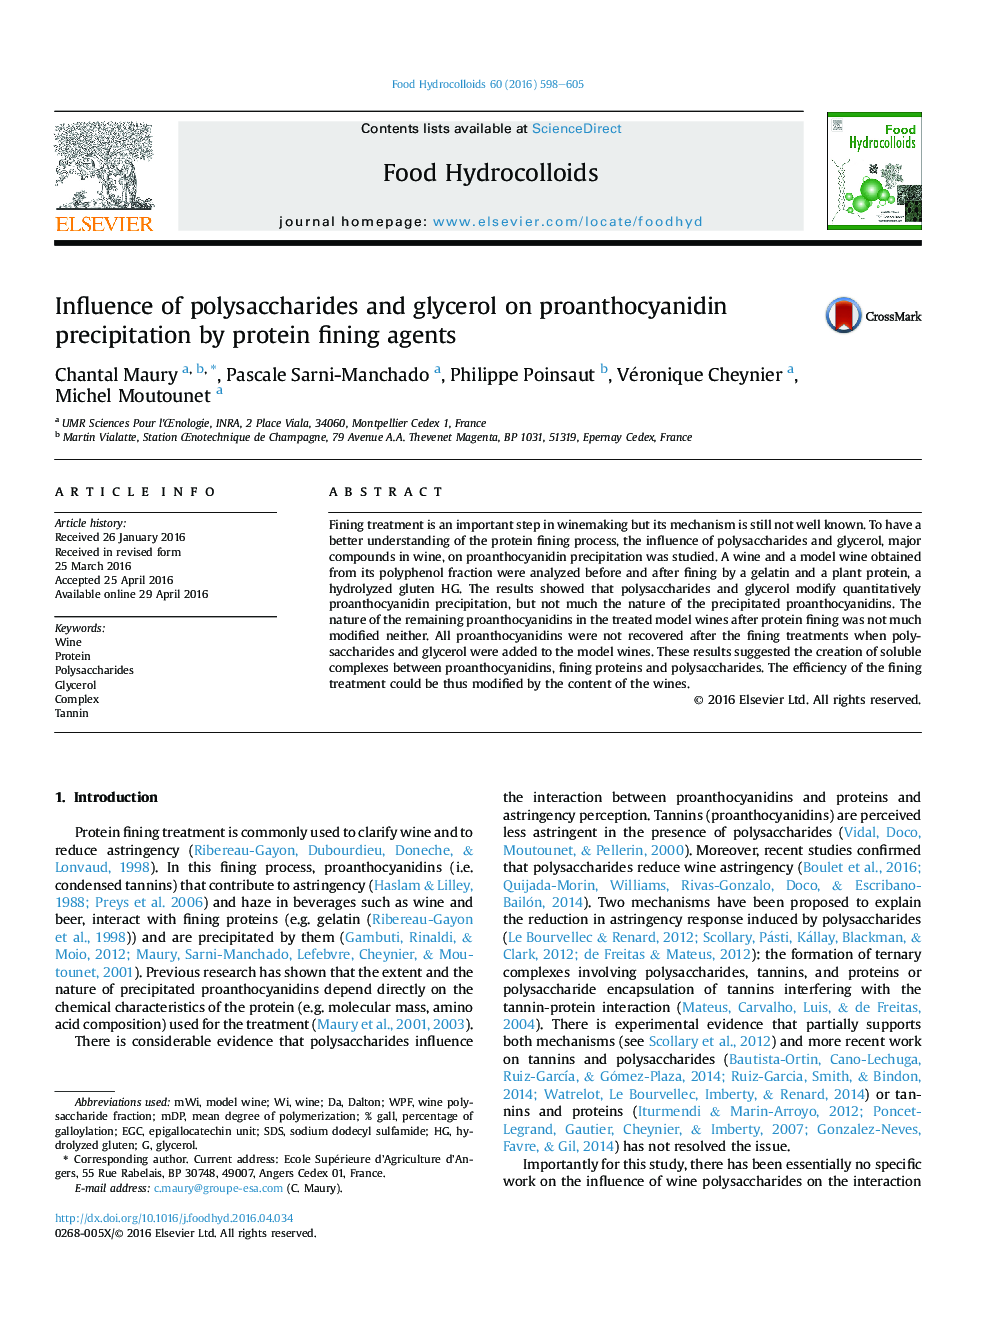 تأثیر پلی ساکارید ها و گلیسرول بر روی پروانتوسیانیدین با استفاده از مواد پروتئینی پروتئین 